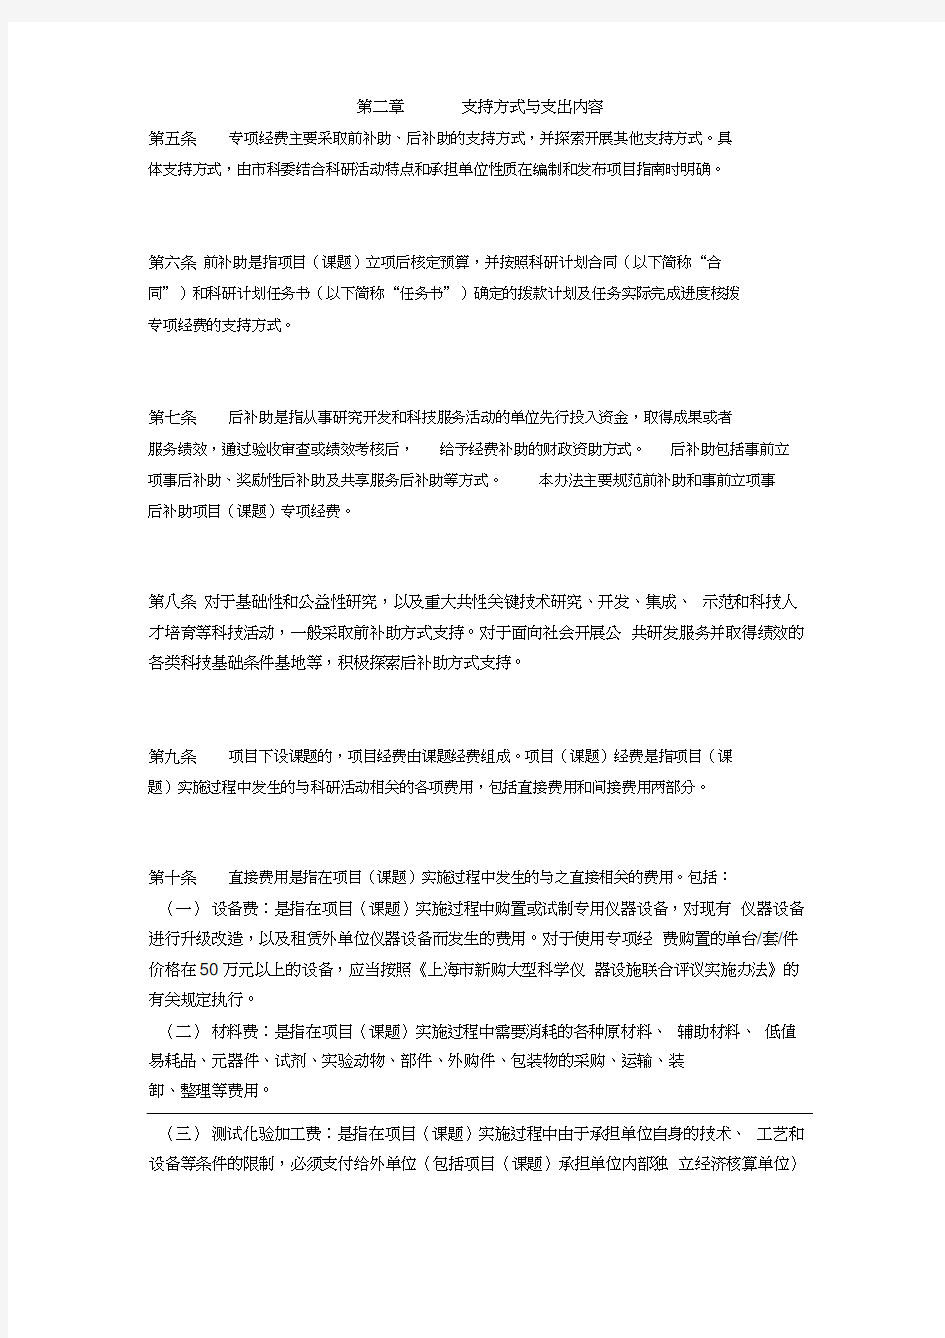 上海市科研计划项目(课题)专项经费管理办法